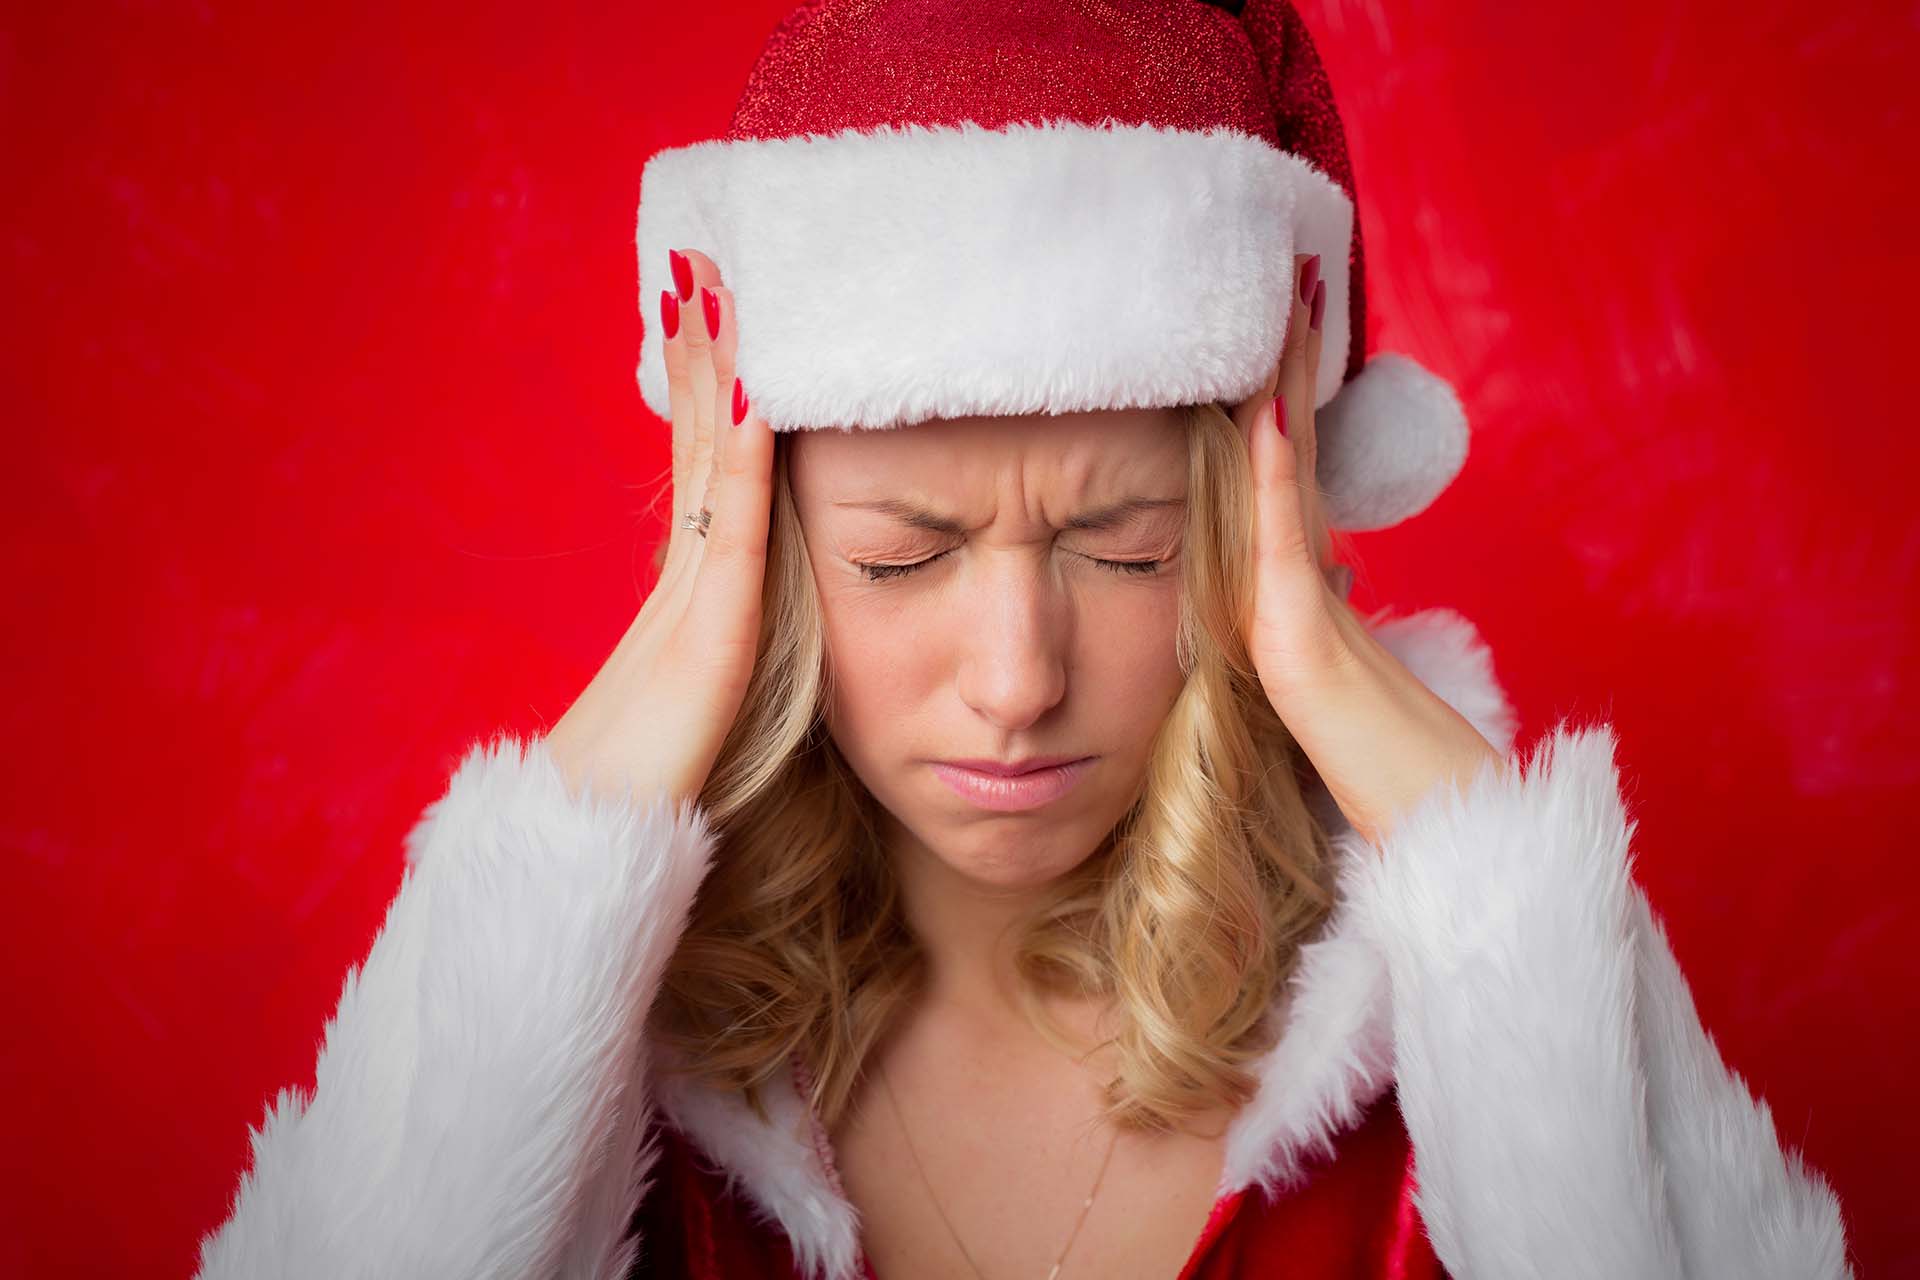 Esistono dei piccoli accorgimenti che è possibile adottare per fronteggiare lo stress natalizio. Scopri quali